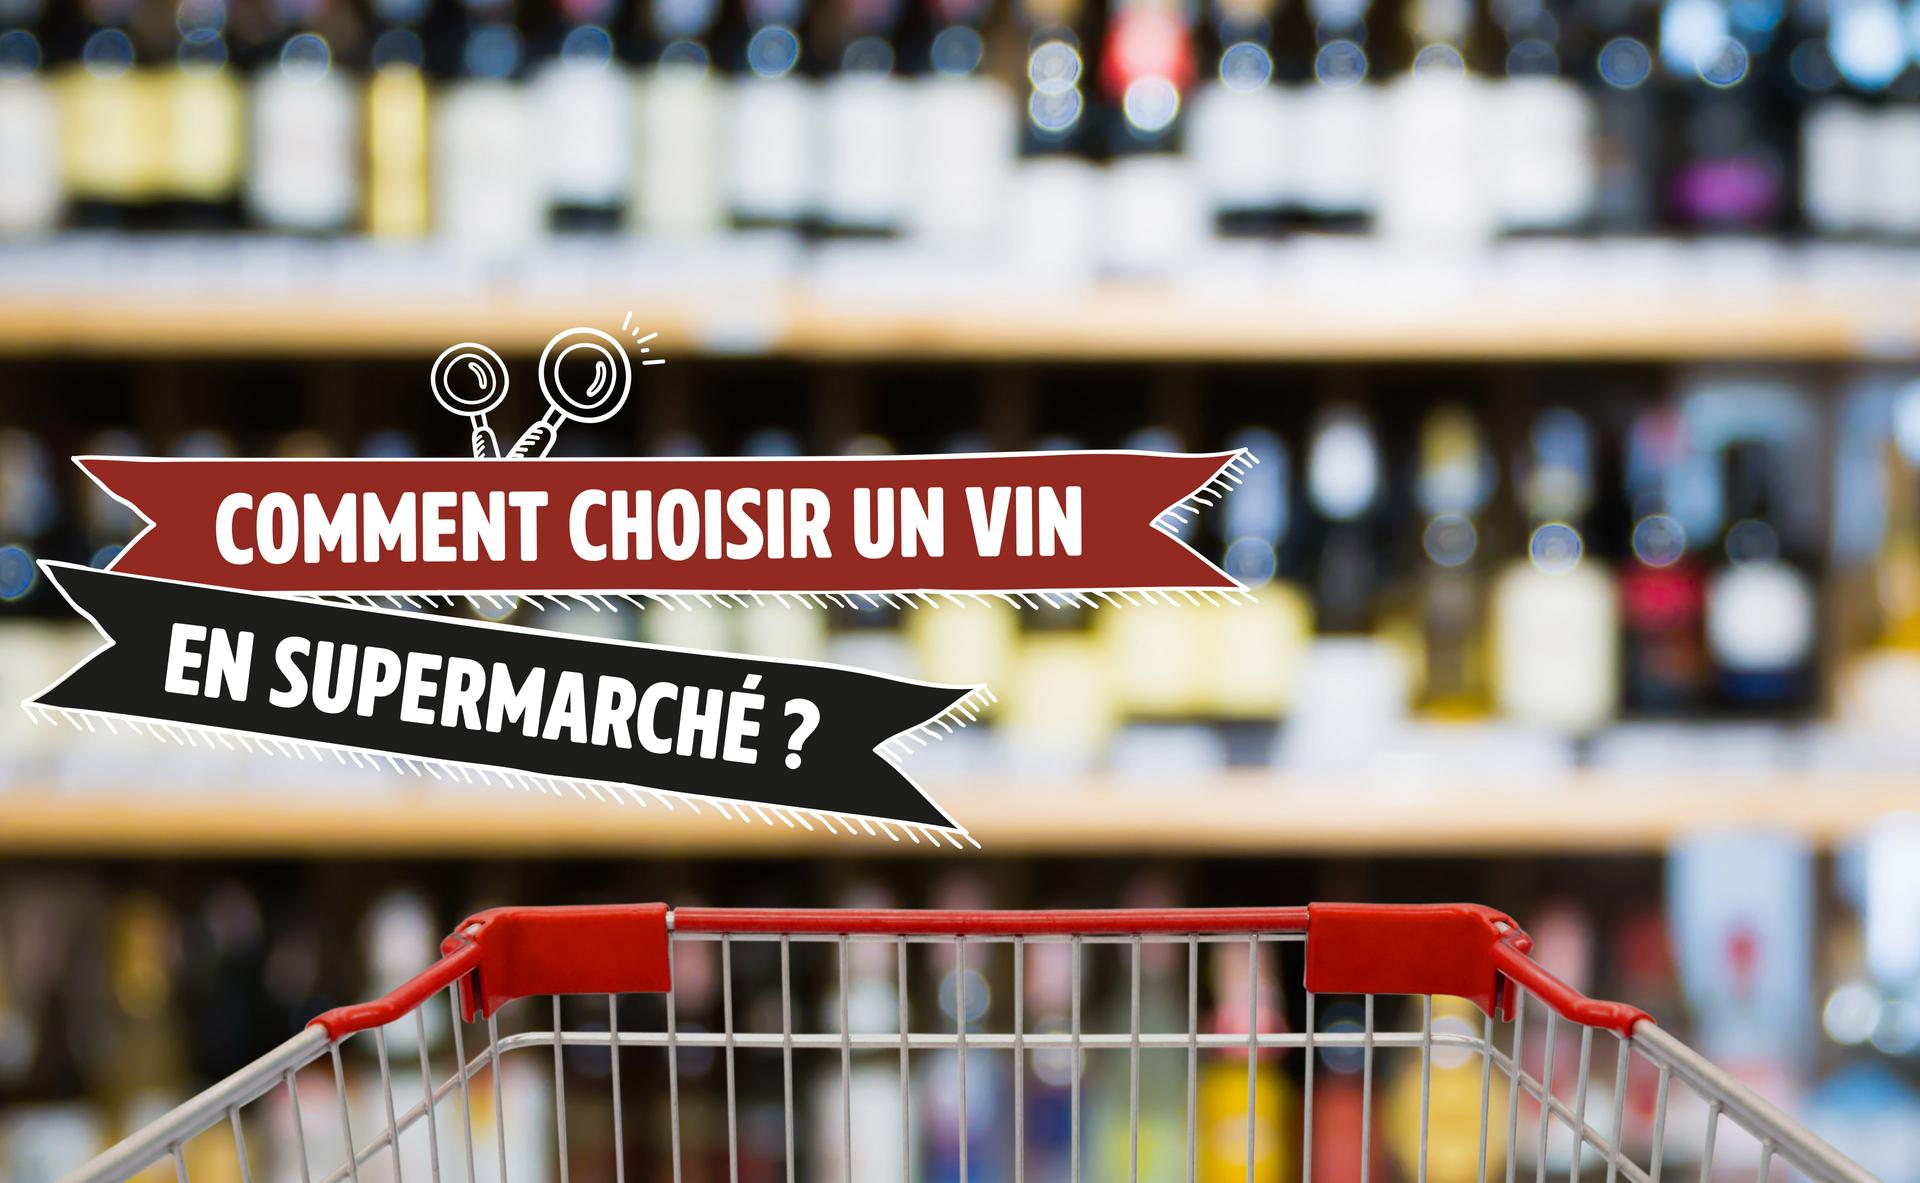 Comment choisir un vin en supermarché ?